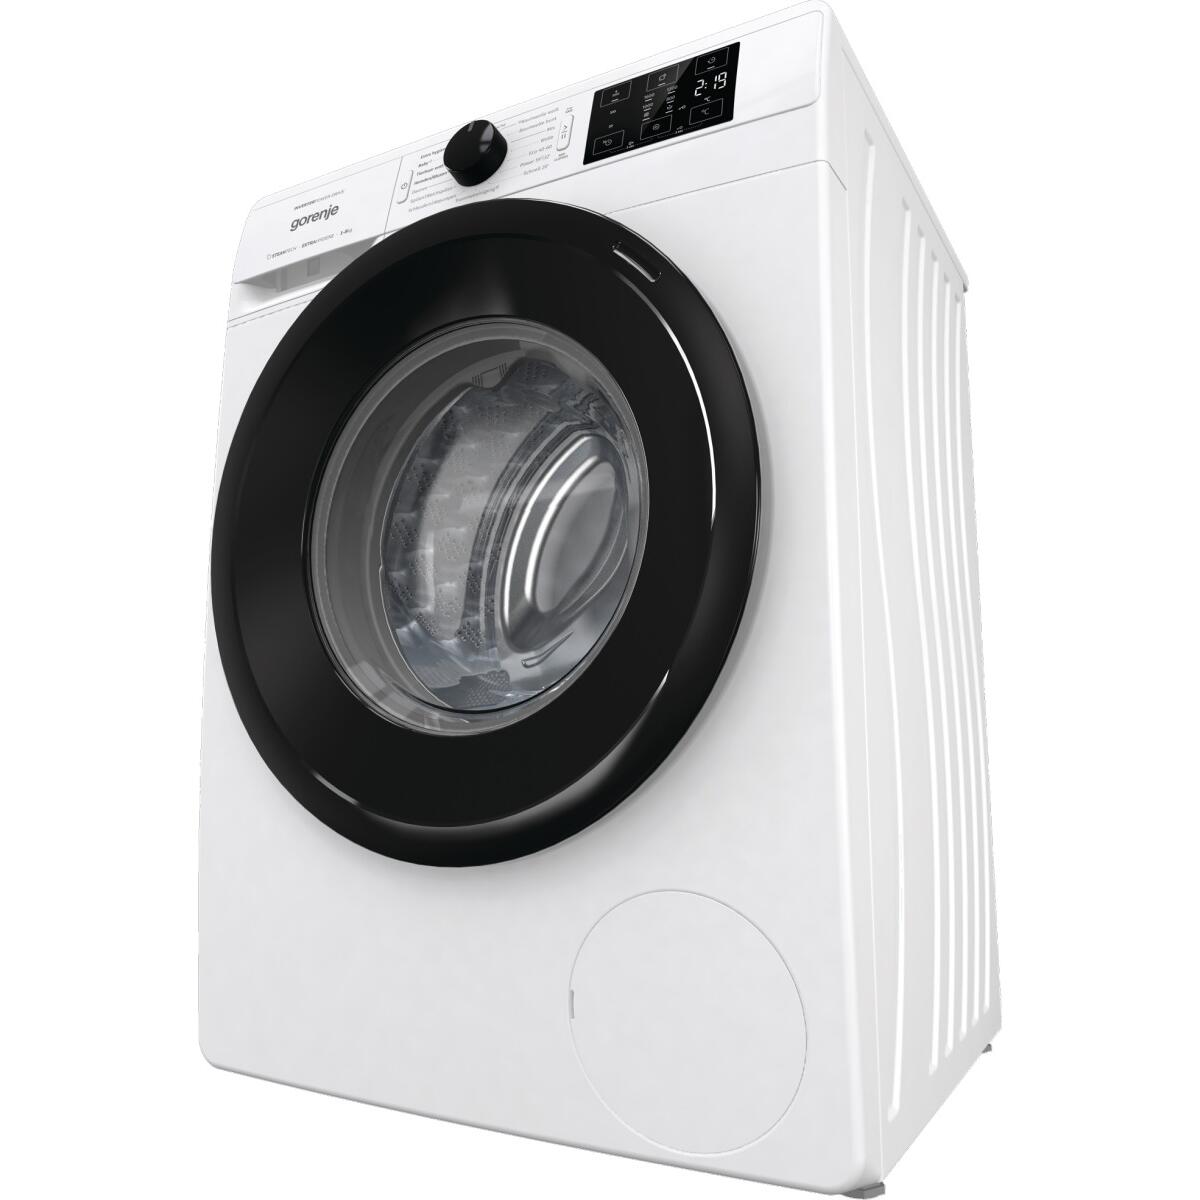 Gorenje WNEI86APS 8kg Frontlader Waschmaschine, 60cm breit, 1600U/Min,  Kindersicherung, 3-teilige Waschmittelschublade, Dampffunktion, LED  Display, Weiß Elektroshop Wagner